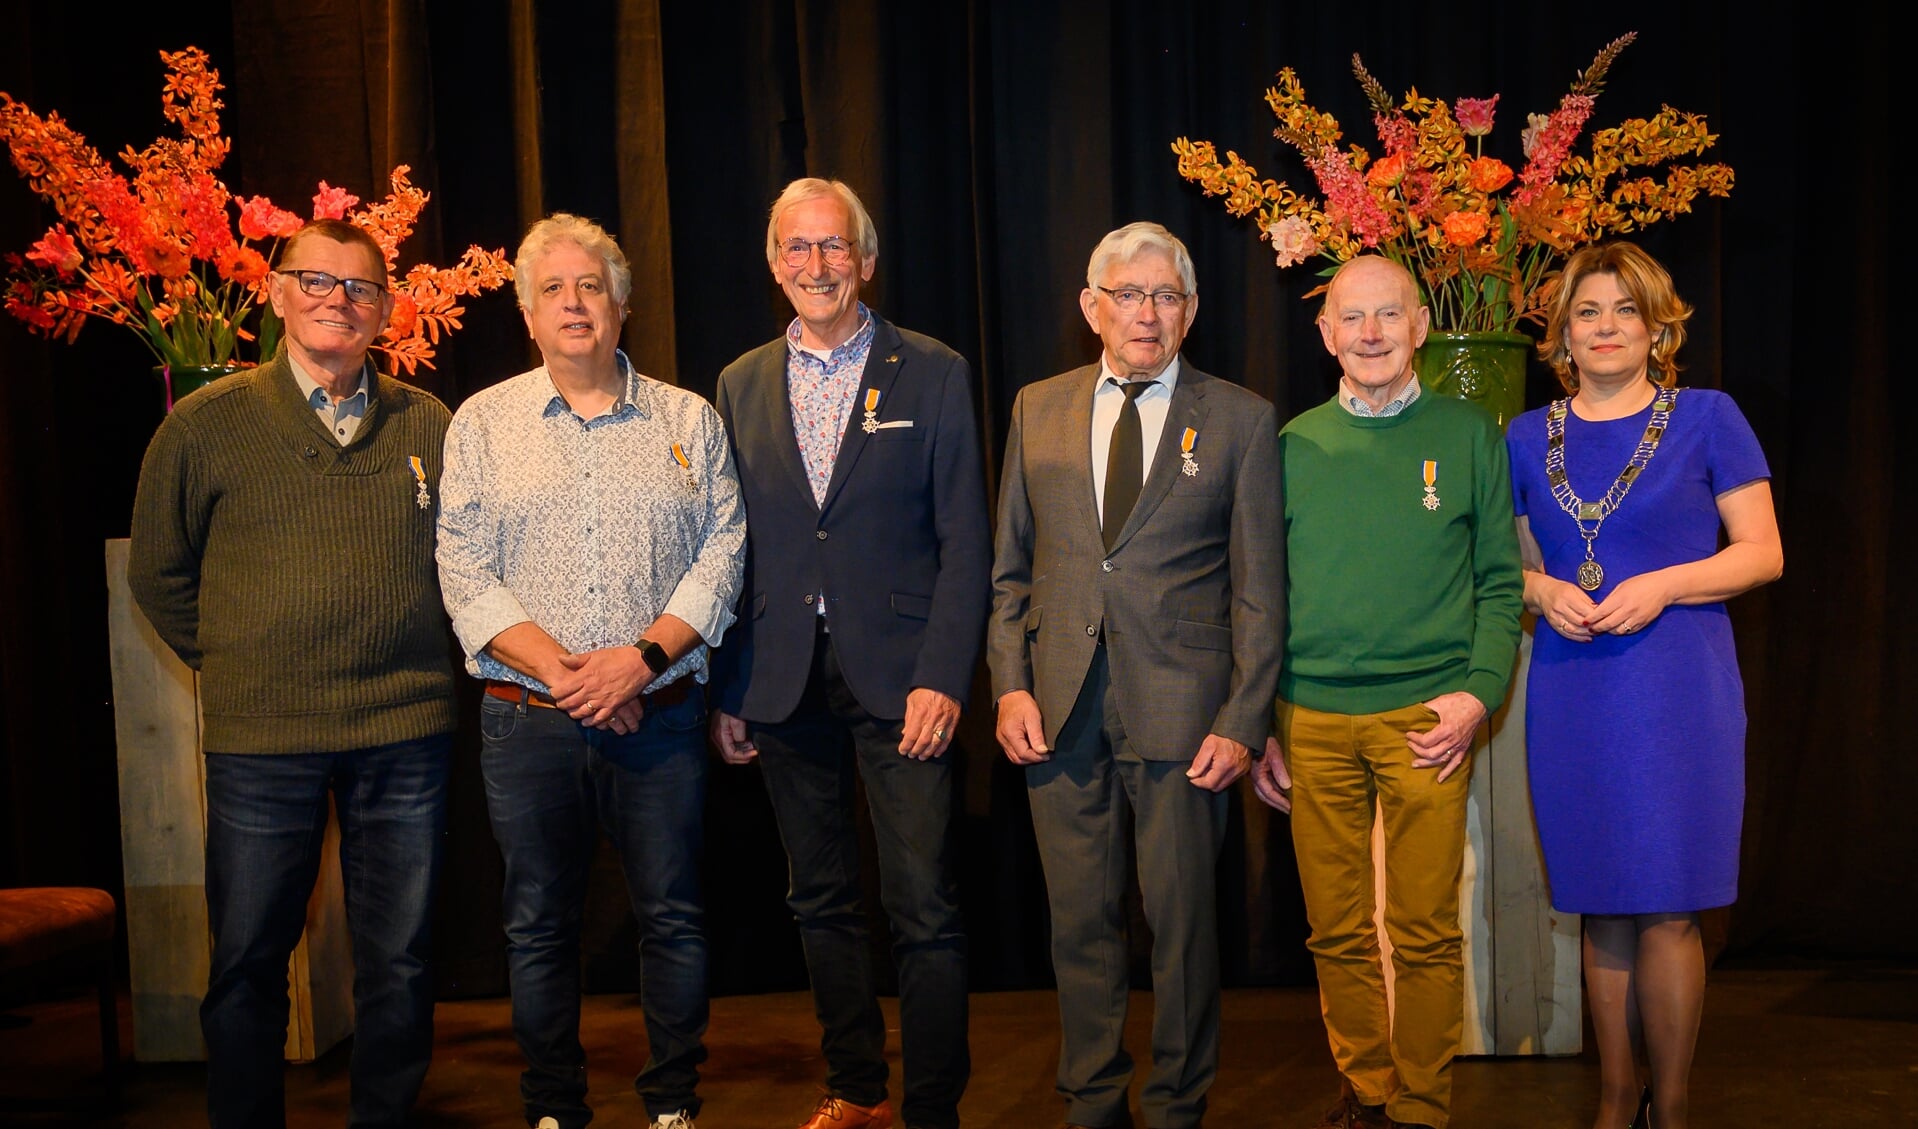 van links naar rechts: de heer L.R.E. Stam, de heer G.J.M. van der Sluijs, de heer G.J.M. Strikker, de heer J.A.M. Nijenhuis, de heer J.J.G. Henricks, burgemeester Sigrid Sengers